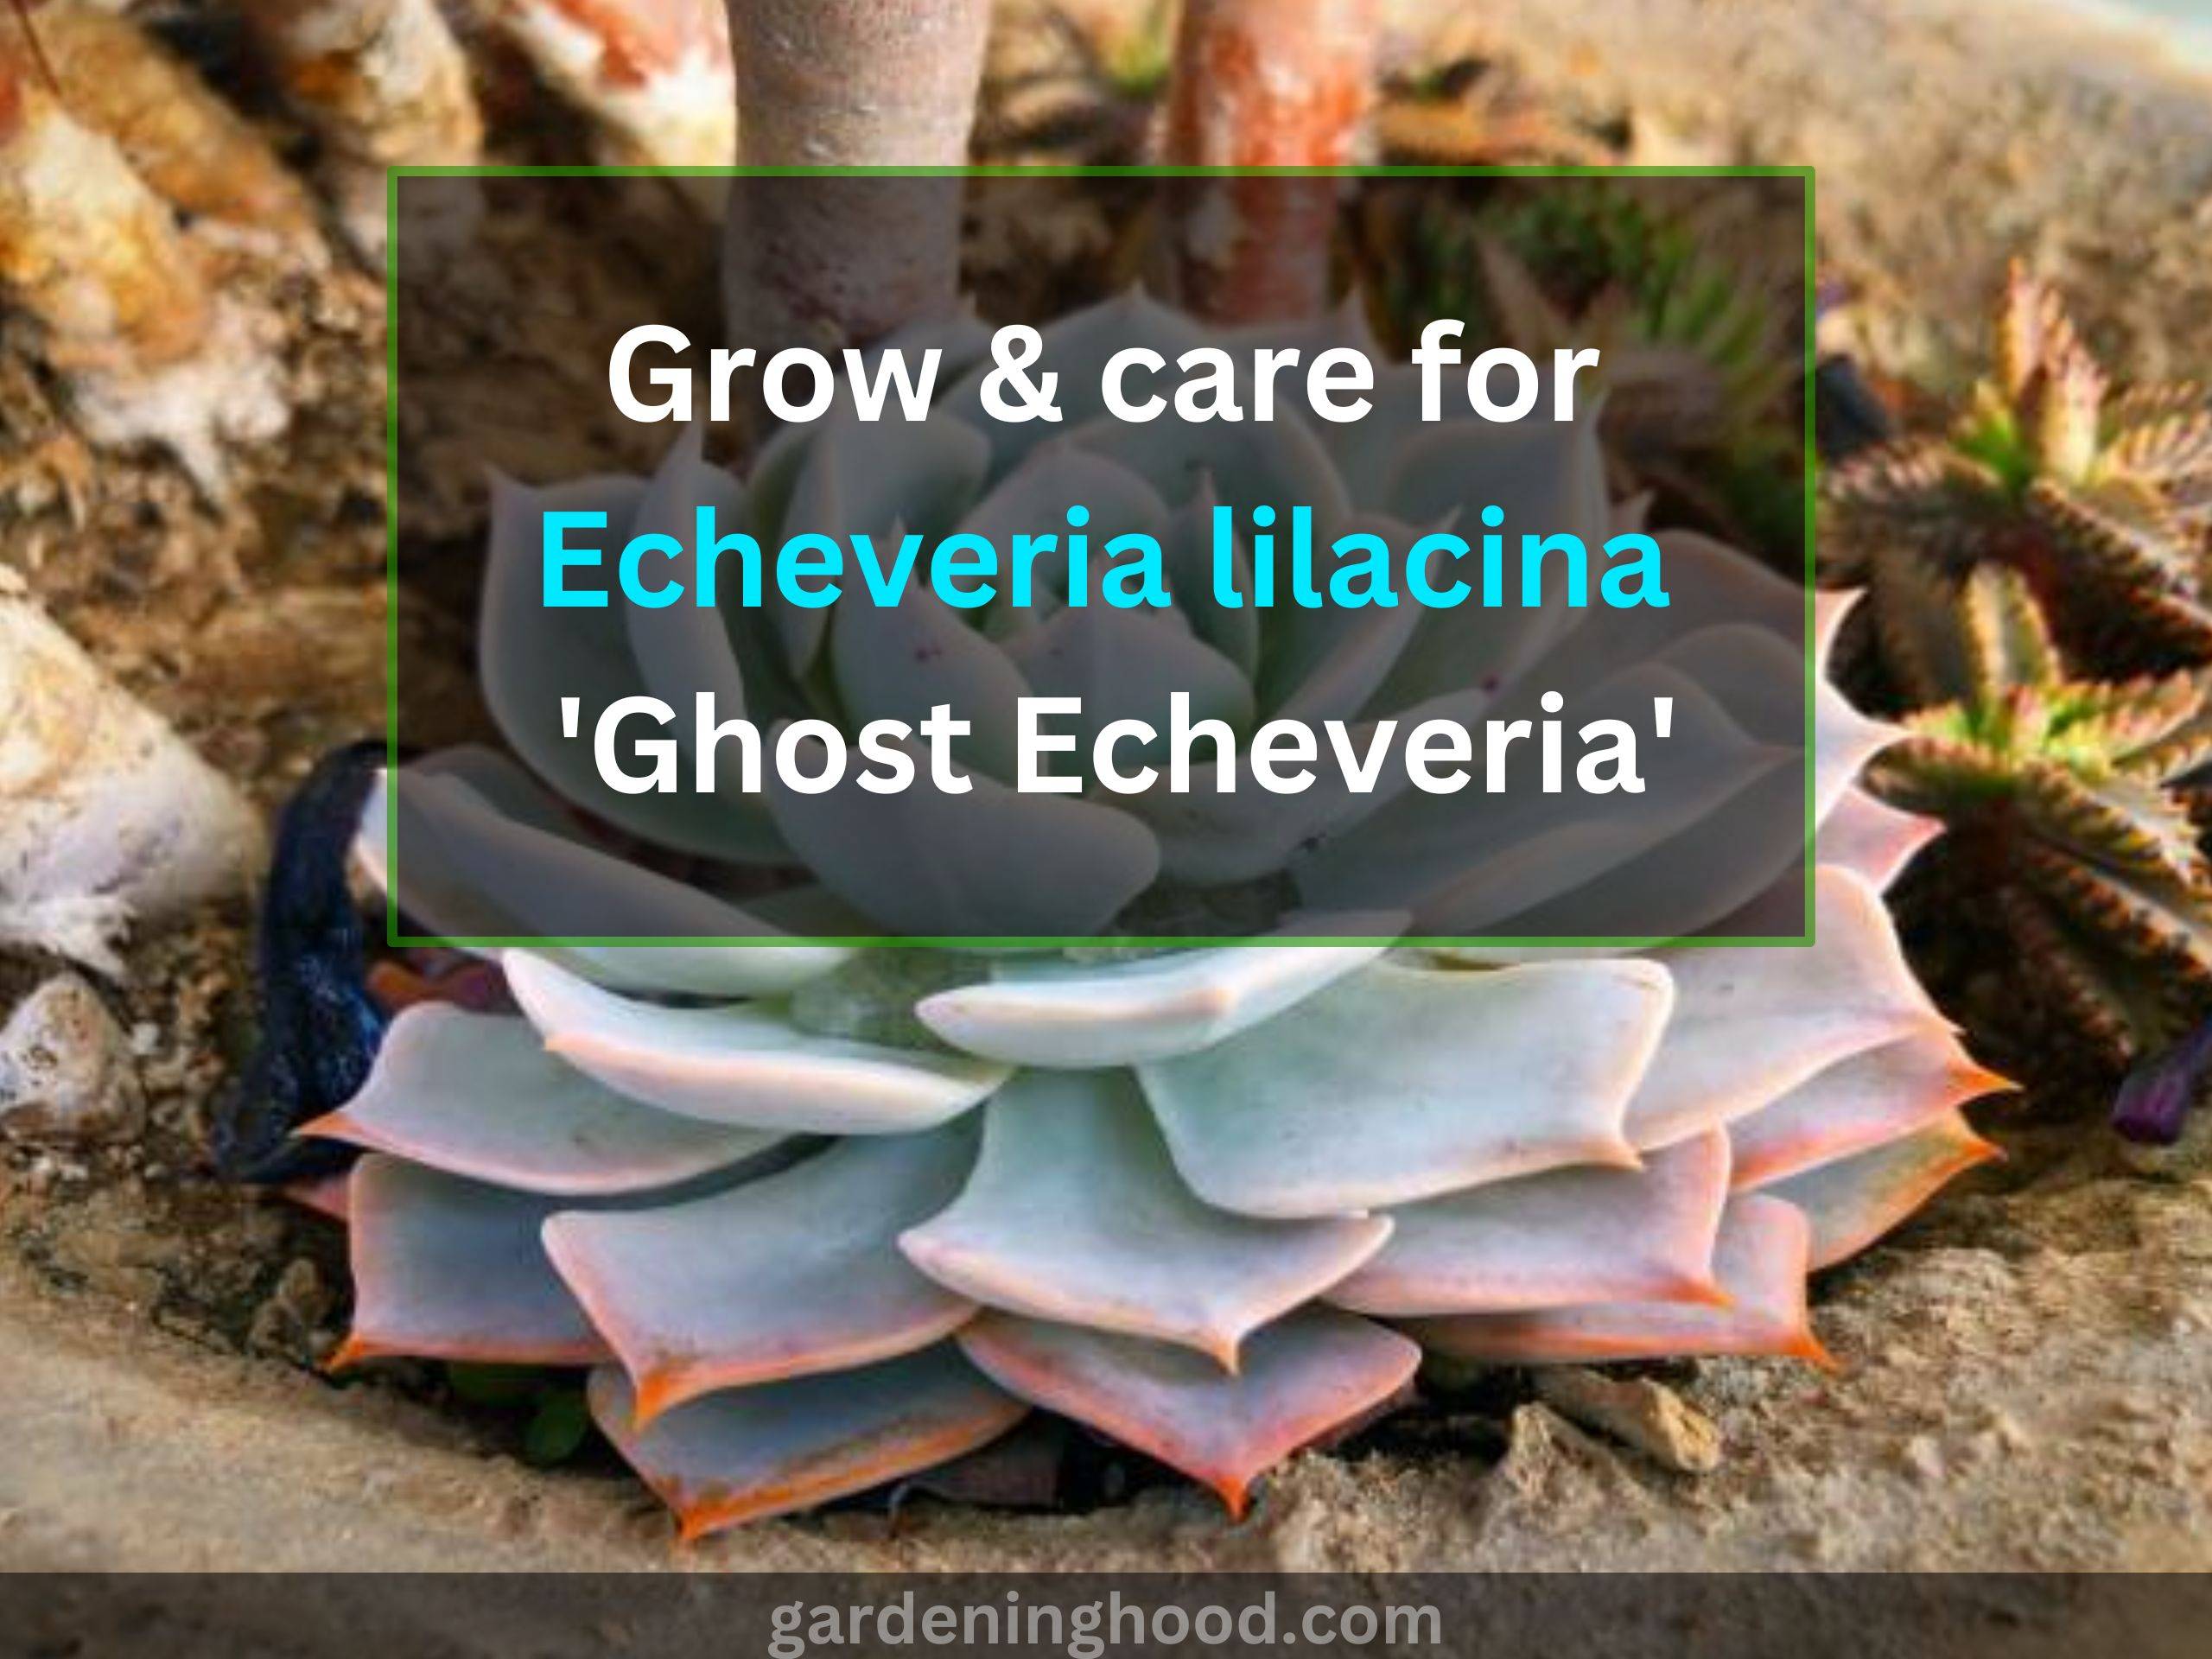 grow & care for echeveria lilacina 'ghost echeveria'